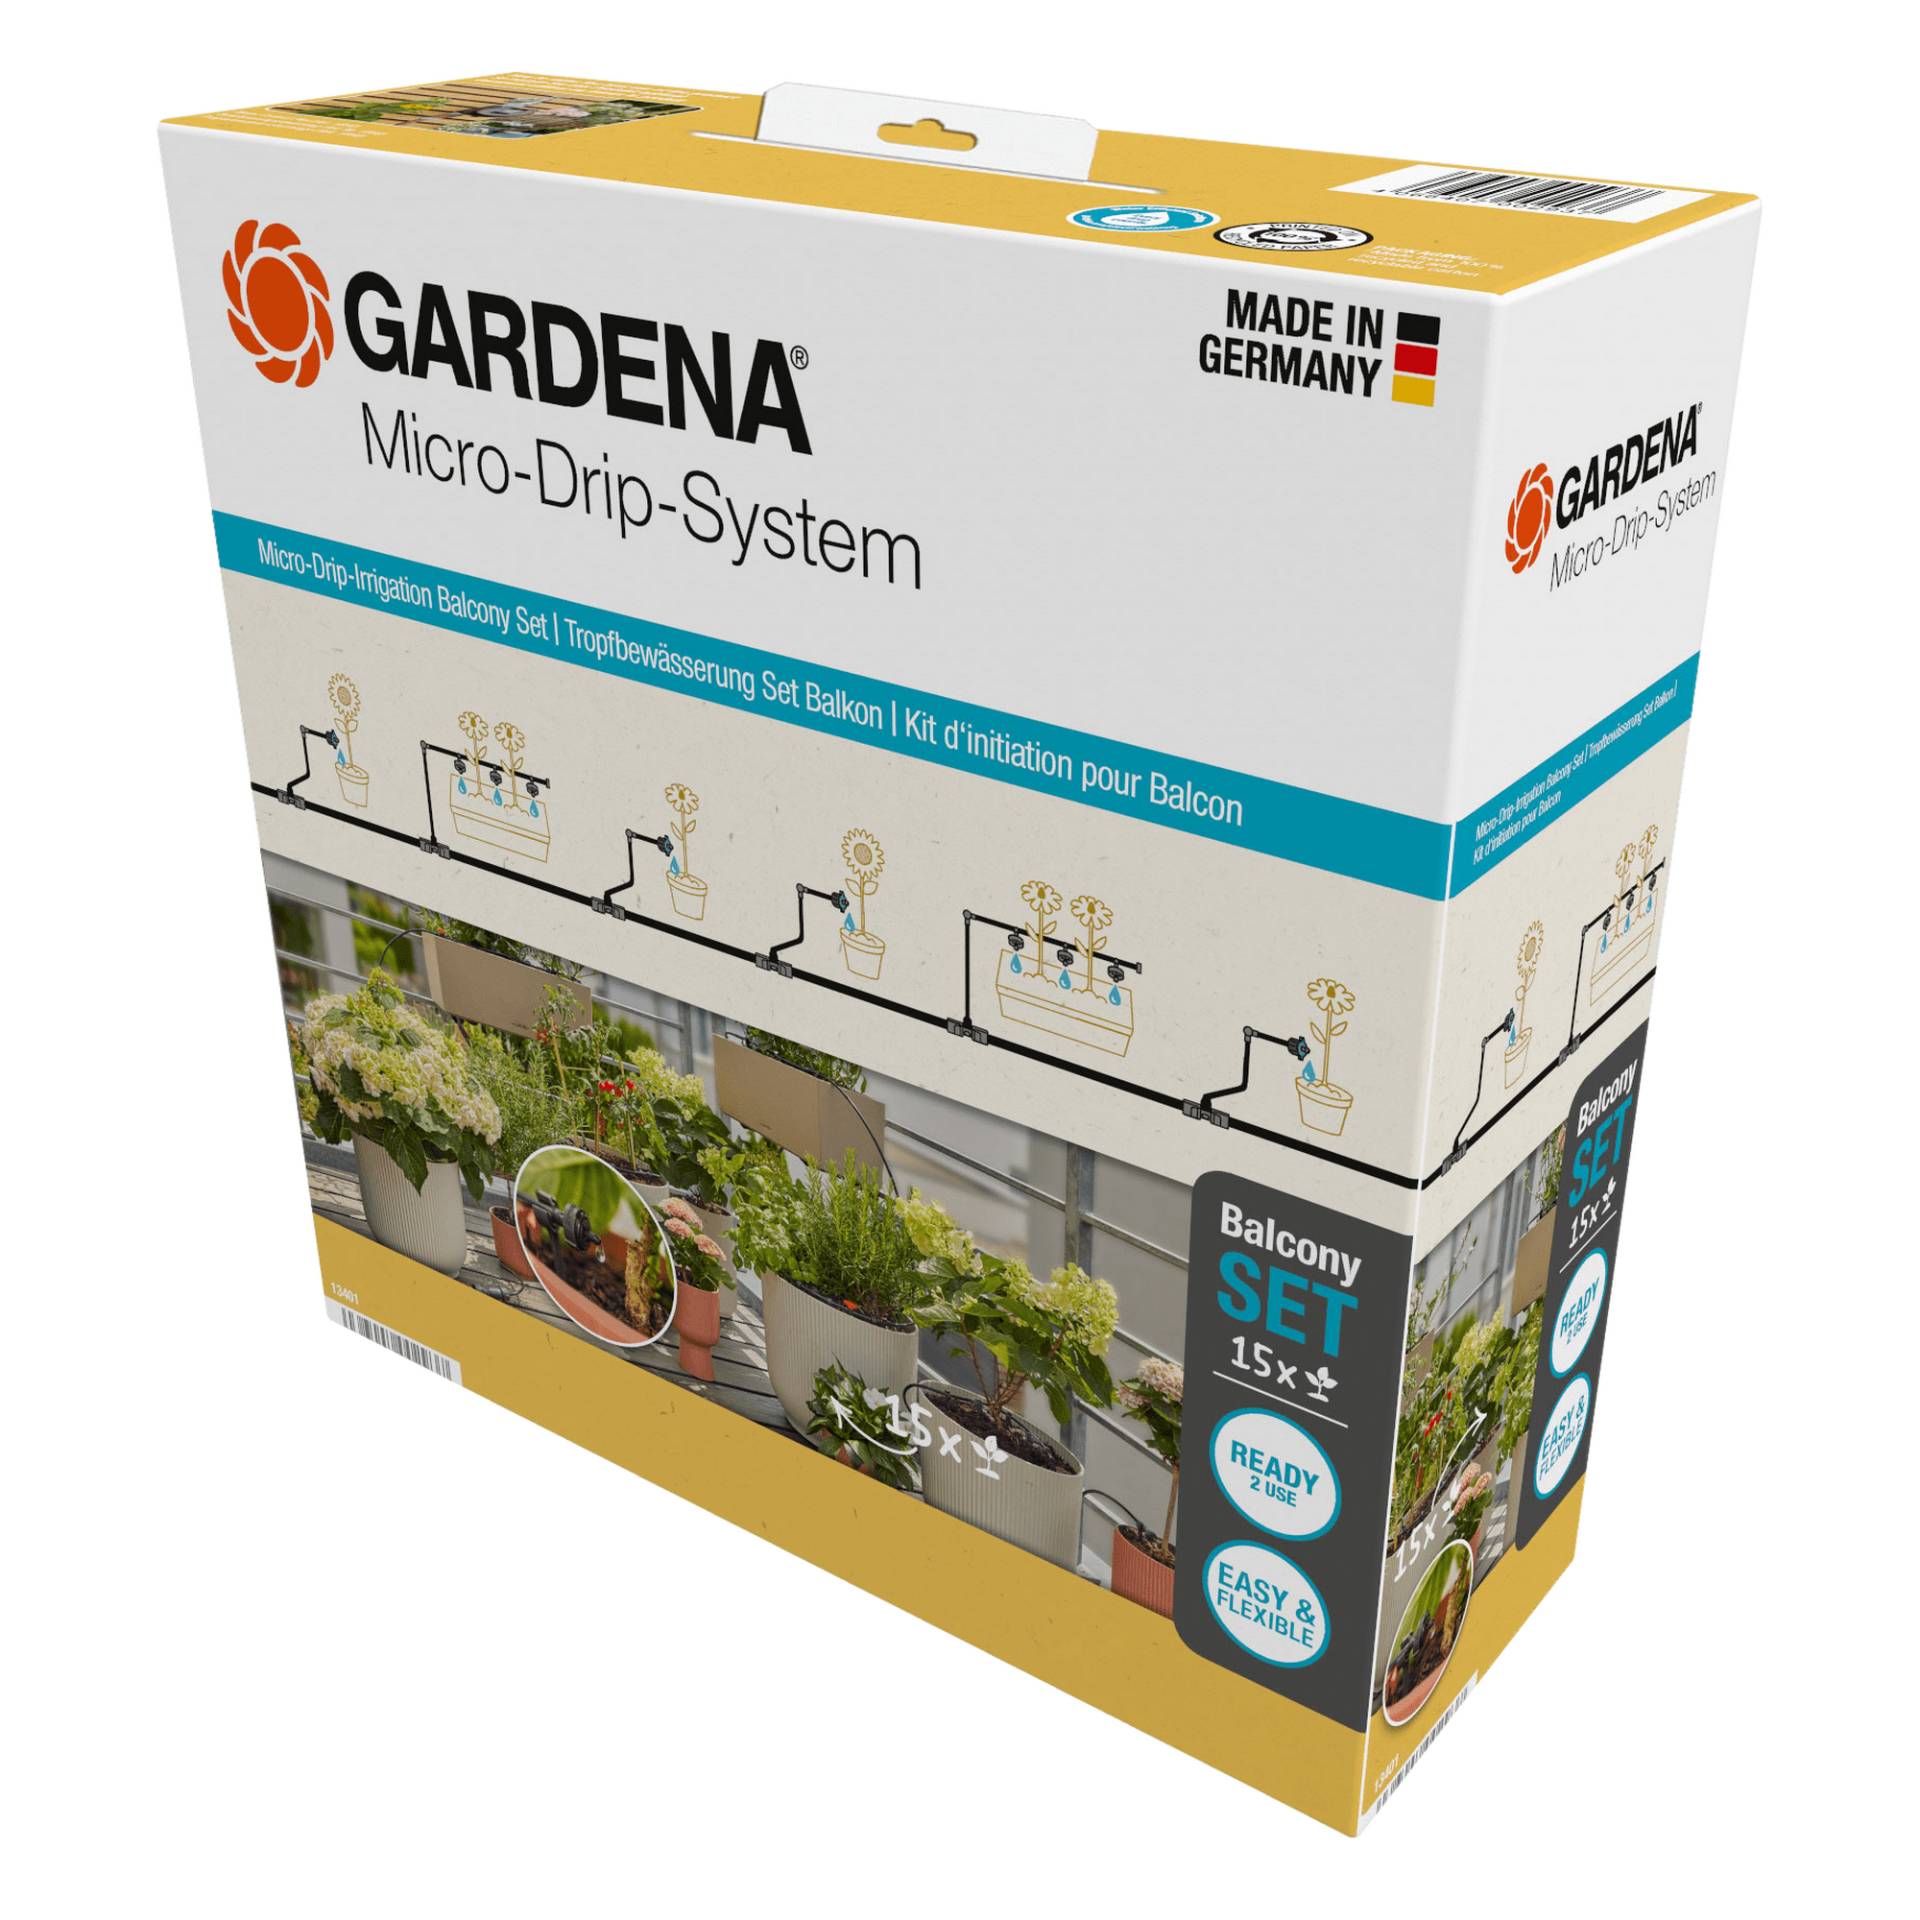 Gardena Tropfbewässerungsset 'Micro-Drip-System' für Balkone von Gardena